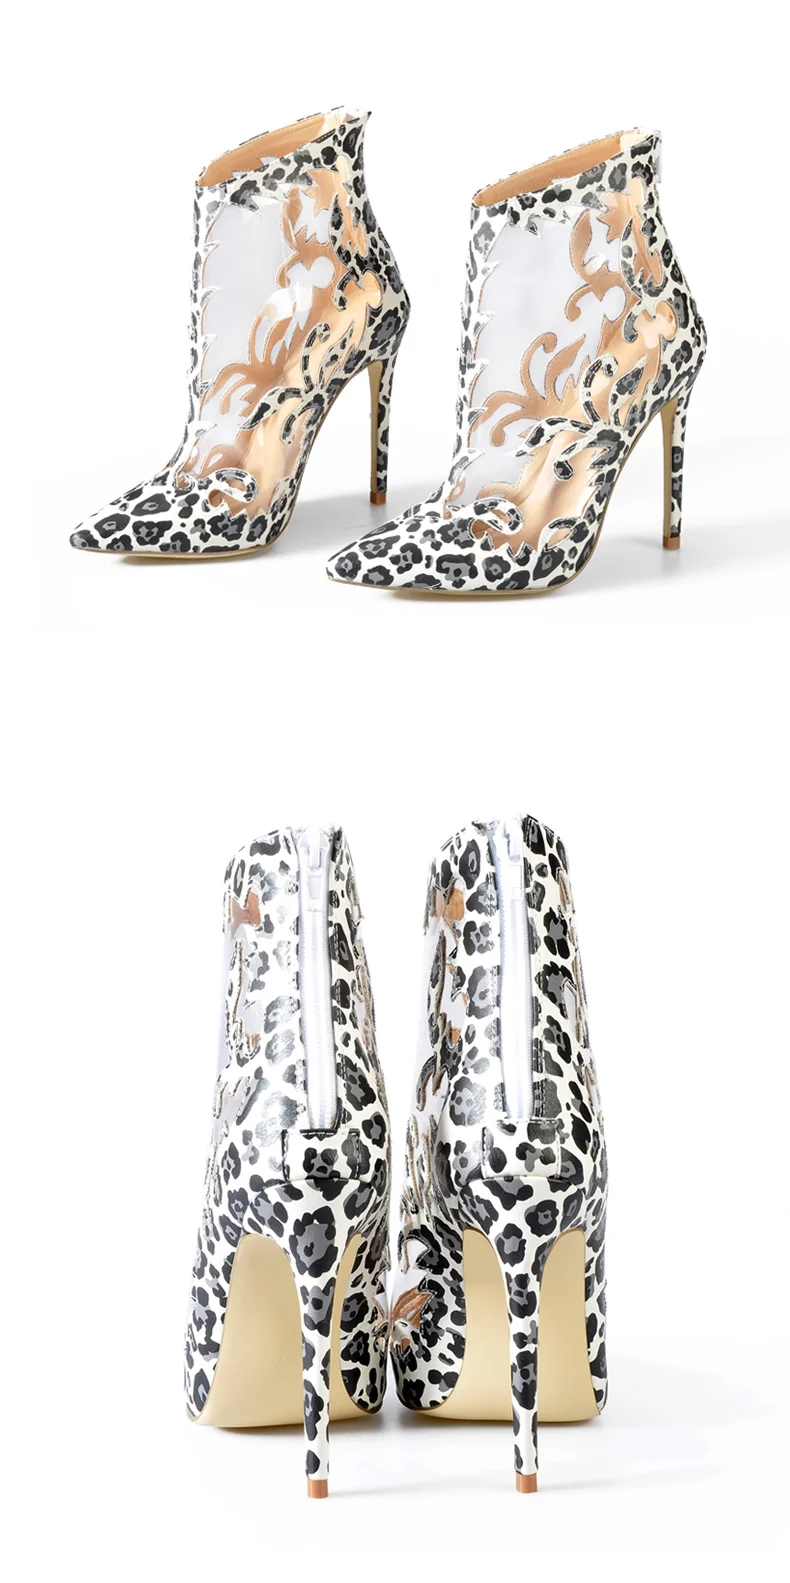 Sinsaut/Женская обувь на высоком каблуке, прозрачная обувь, Perspex, женские водонепроницаемые ботильоны из ПВХ, ботинки с лазерной обработкой, дизайн с резными листьями и леопардовым принтом